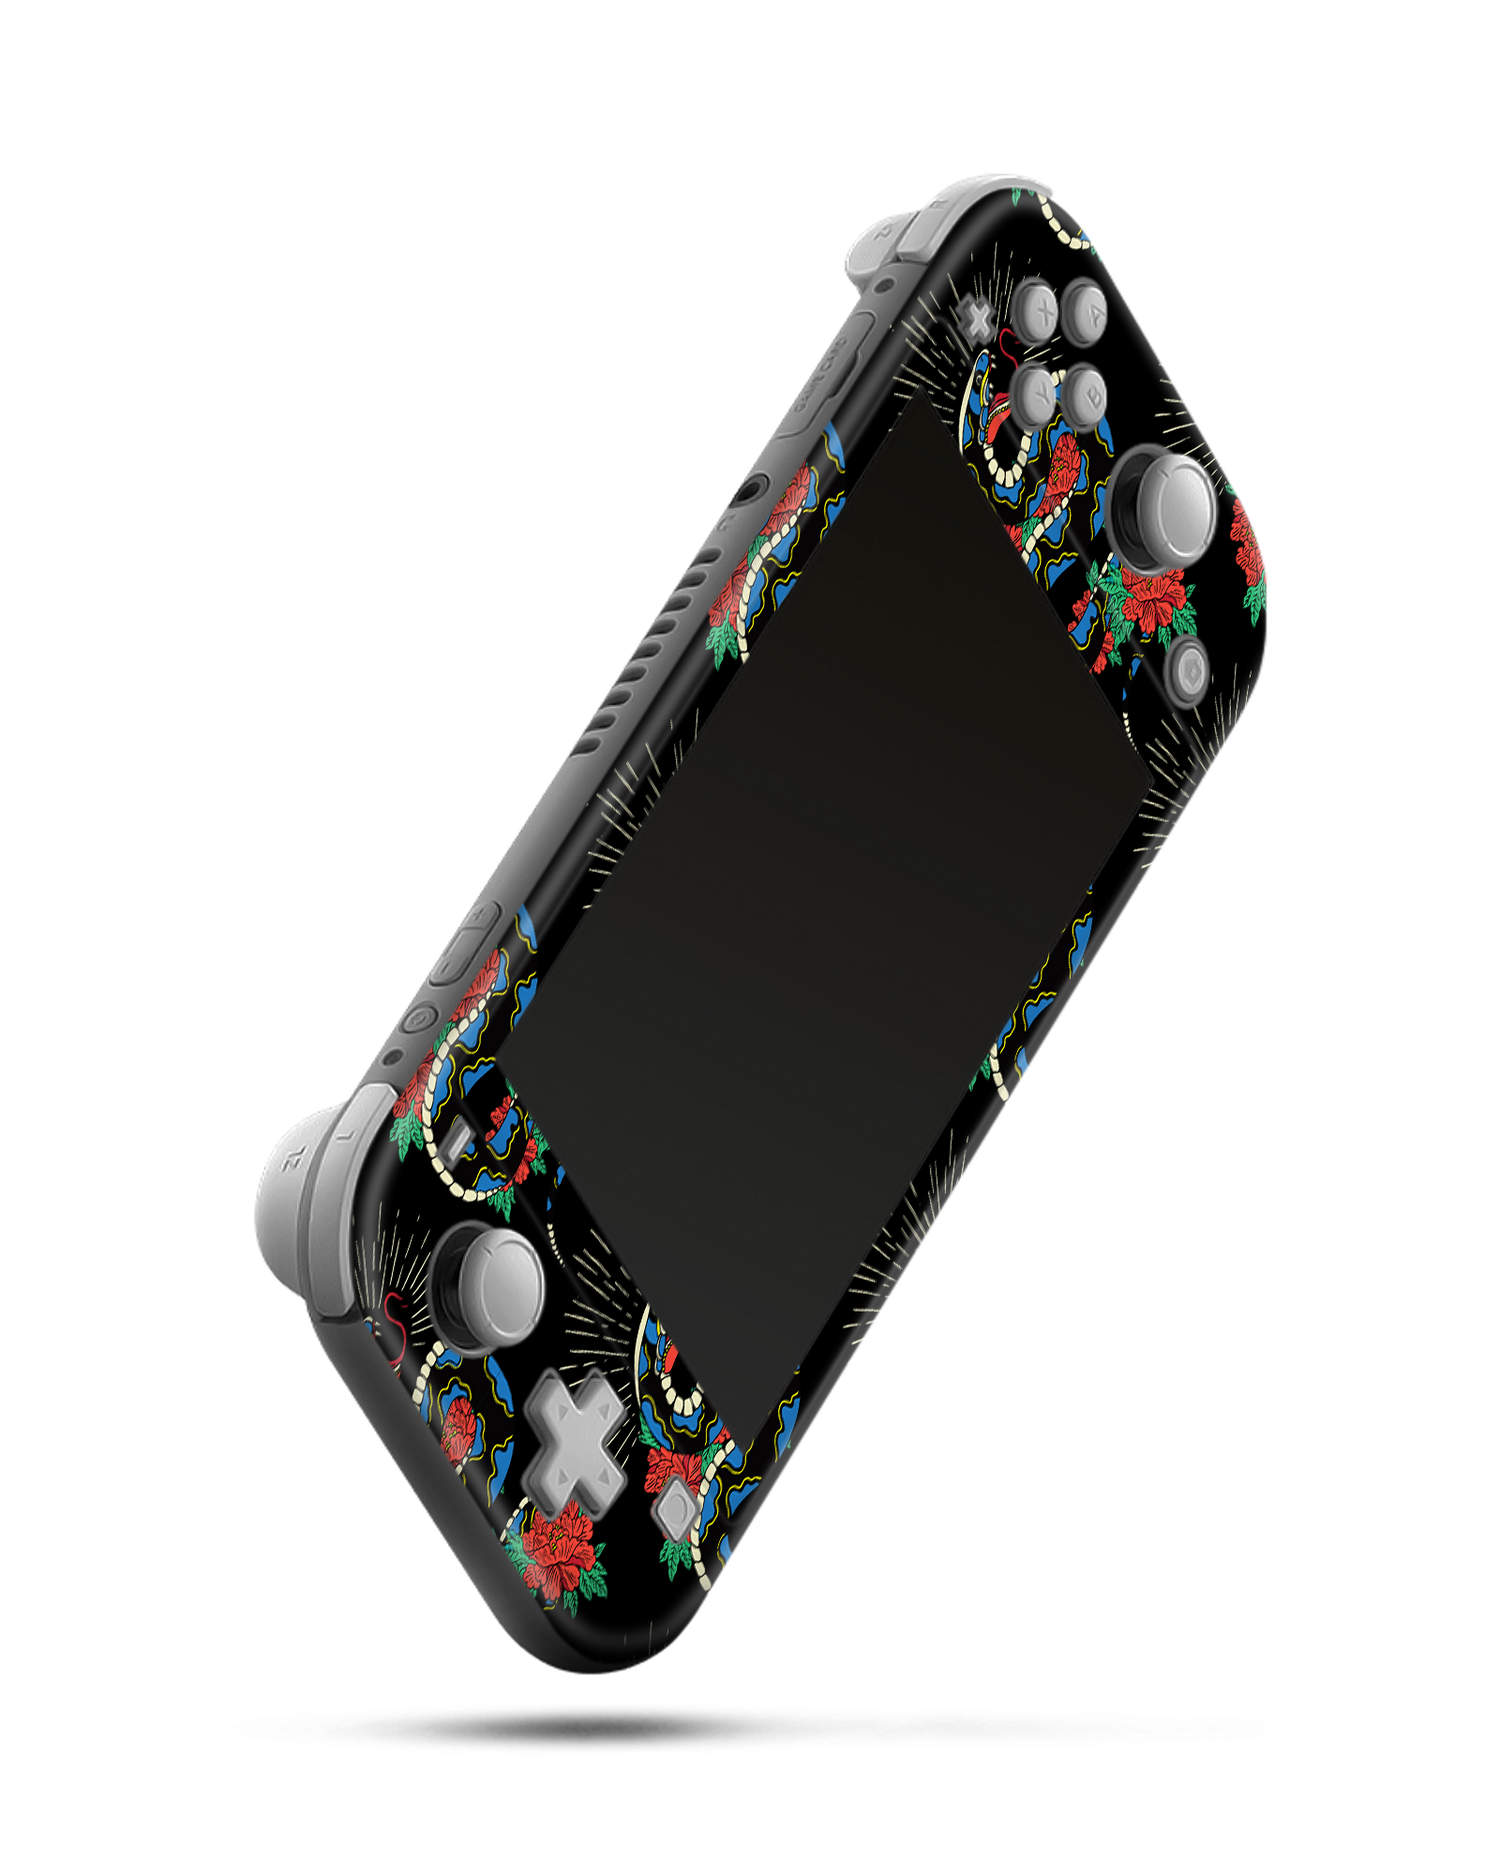 Repeating Snakes 2 Konsolen Aufkleber für Nintendo Switch Lite: Seitenansicht